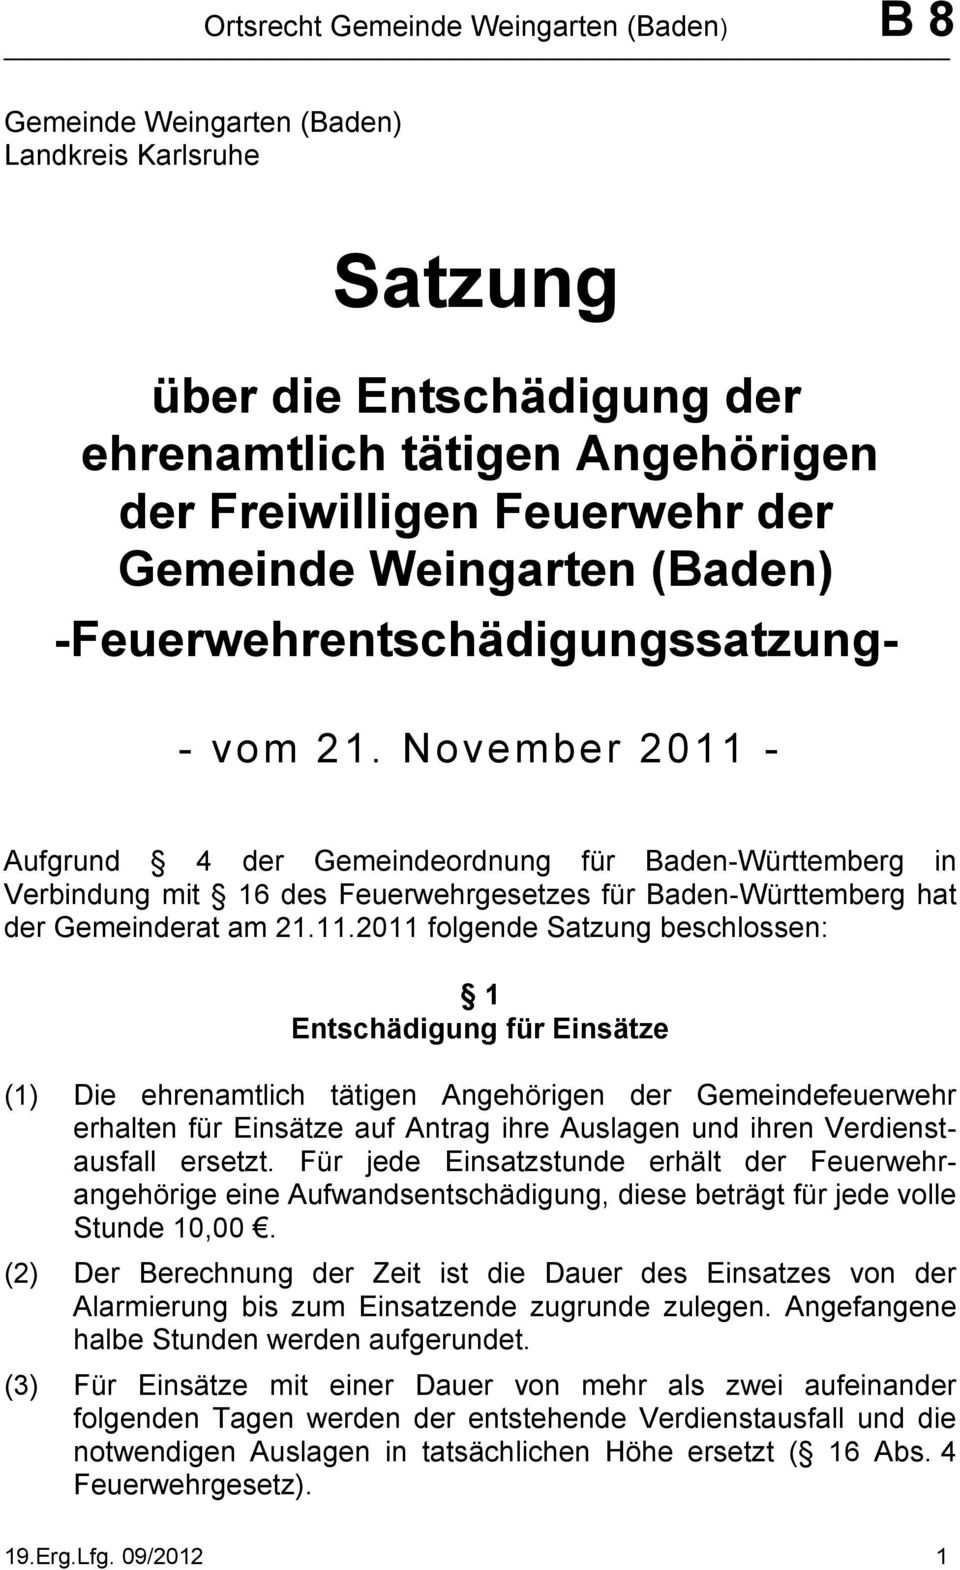 - Aufgrund 4 der Gemeindeordnung für Baden-Württemberg in Verbindung mit 16 des Feuerwehrgesetzes für Baden-Württemberg hat der Gemeinderat am 21.11.